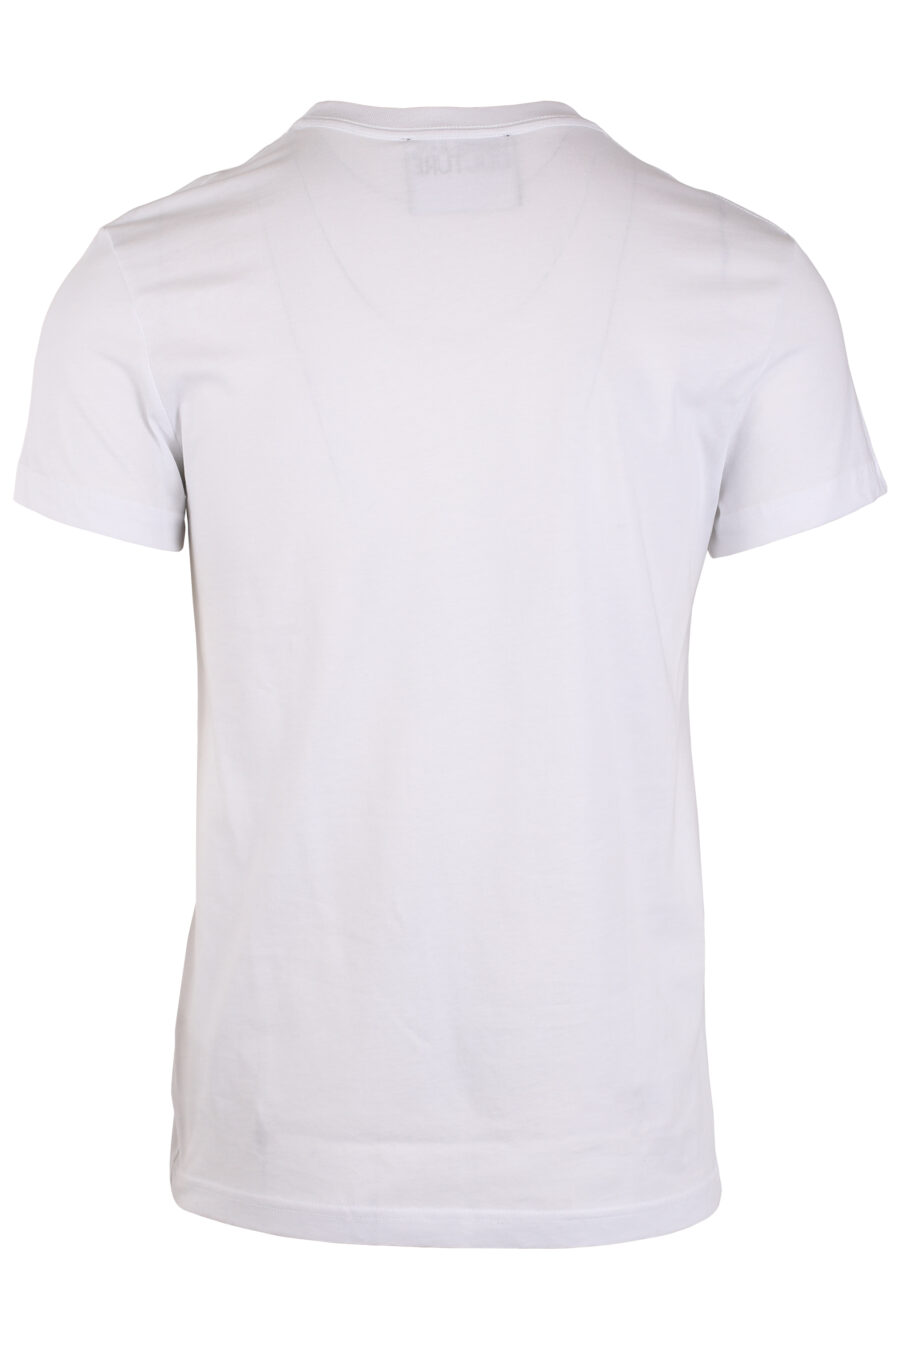 Camiseta blanca con logo en placa plateado - IMG 4051